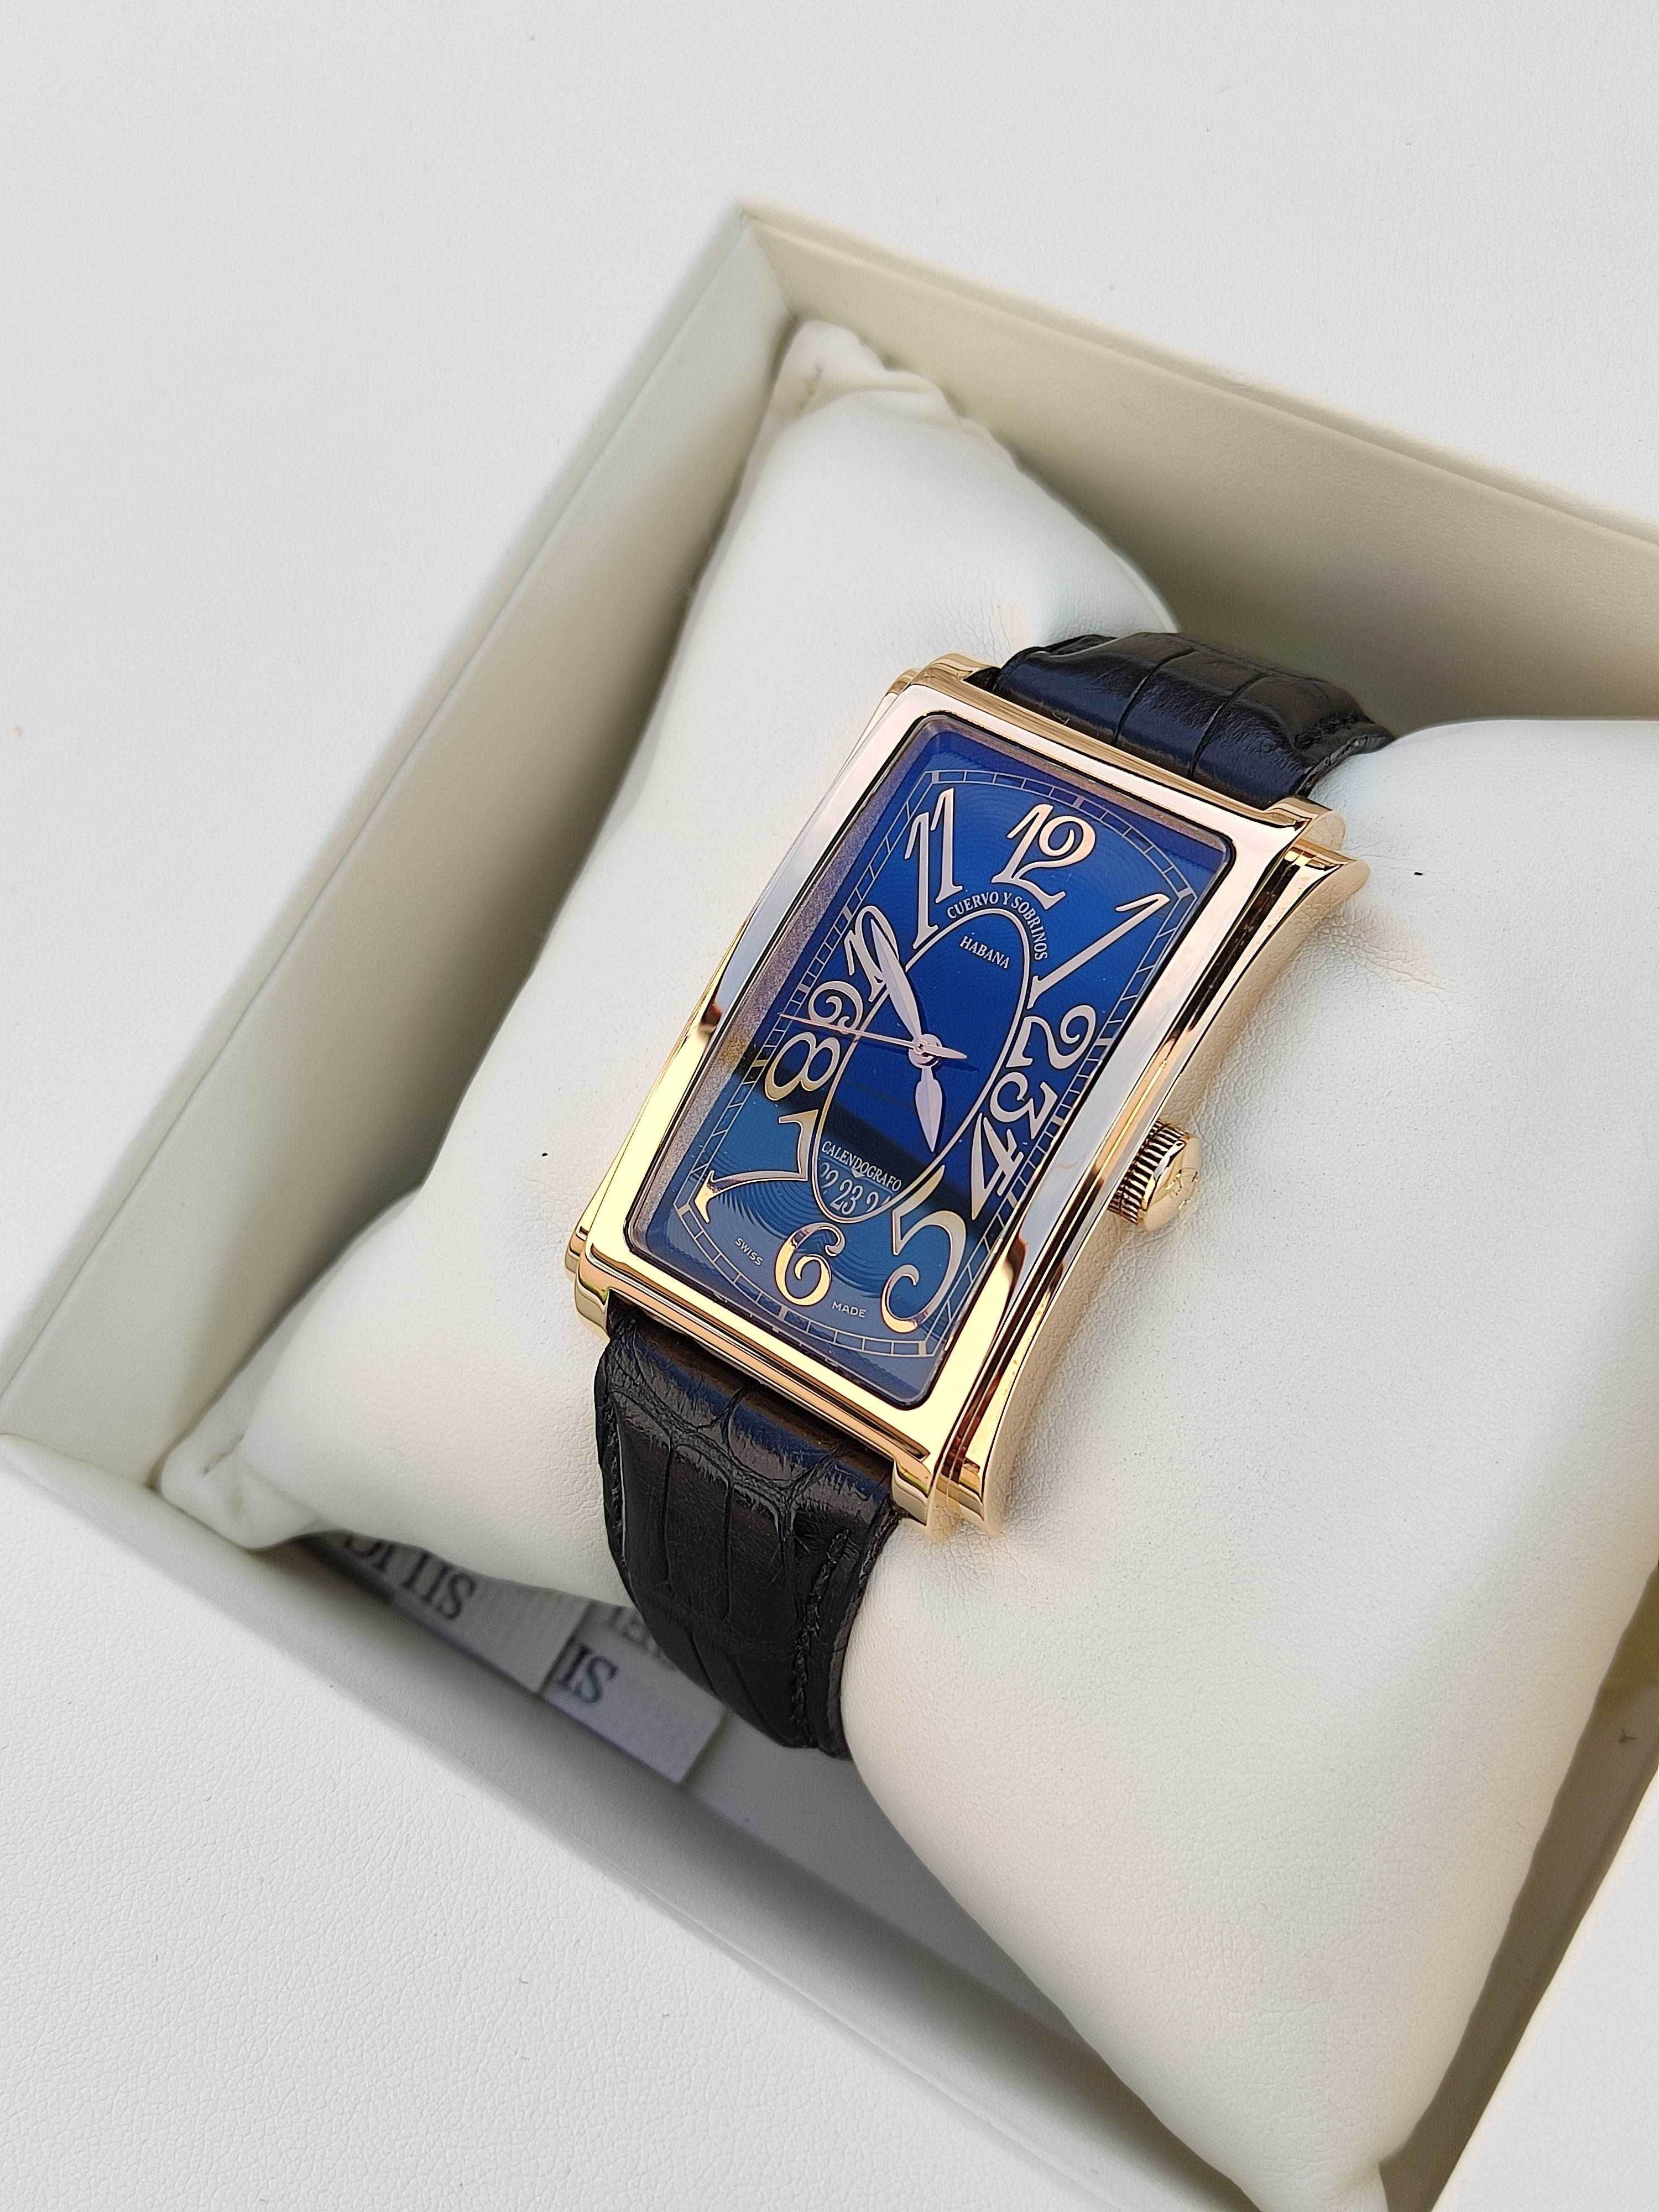 CUERVO Y SOBRINOS Prominente  gold 18K złoto 750 Limited złoty zegarek